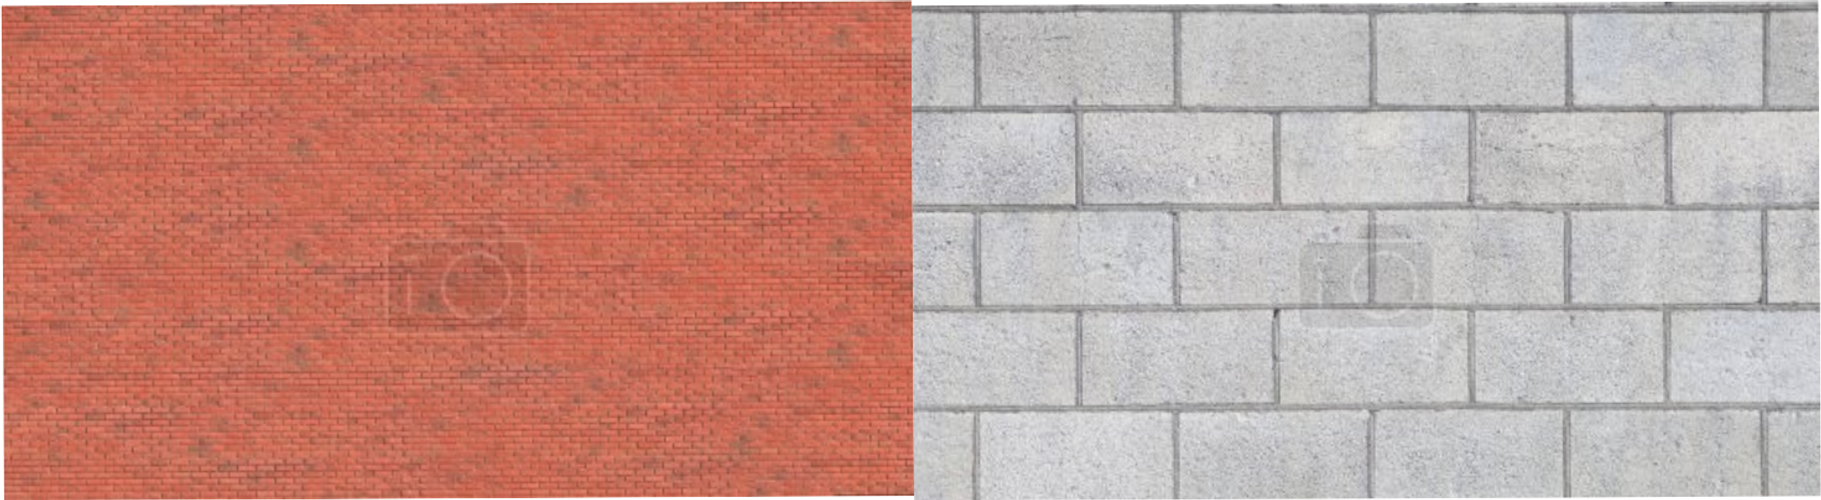 Brique vs. Parpaing : Comparaison isolation